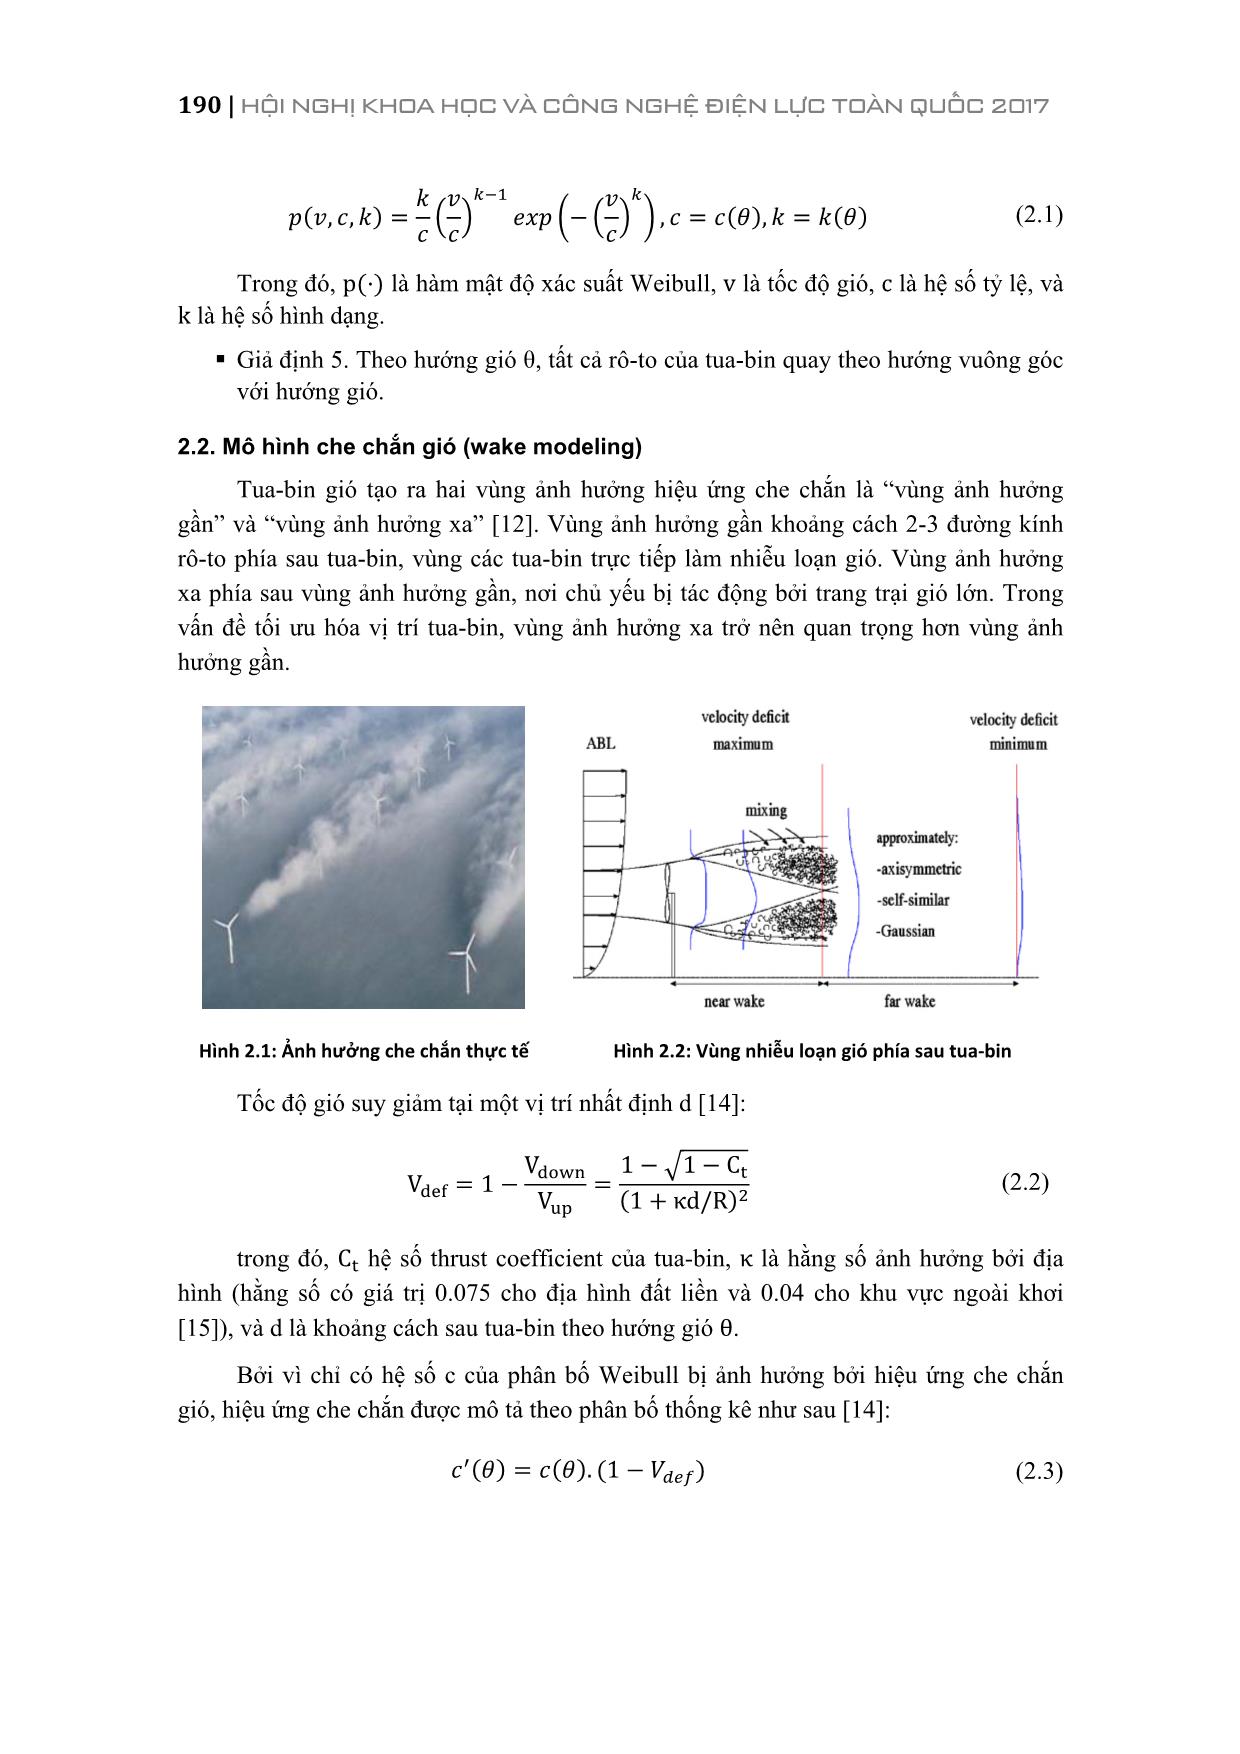 Xác định tối ưu vị trí Tua-bin trong trang trại gió sử dụng thuật toán tìm kiếm trang 3